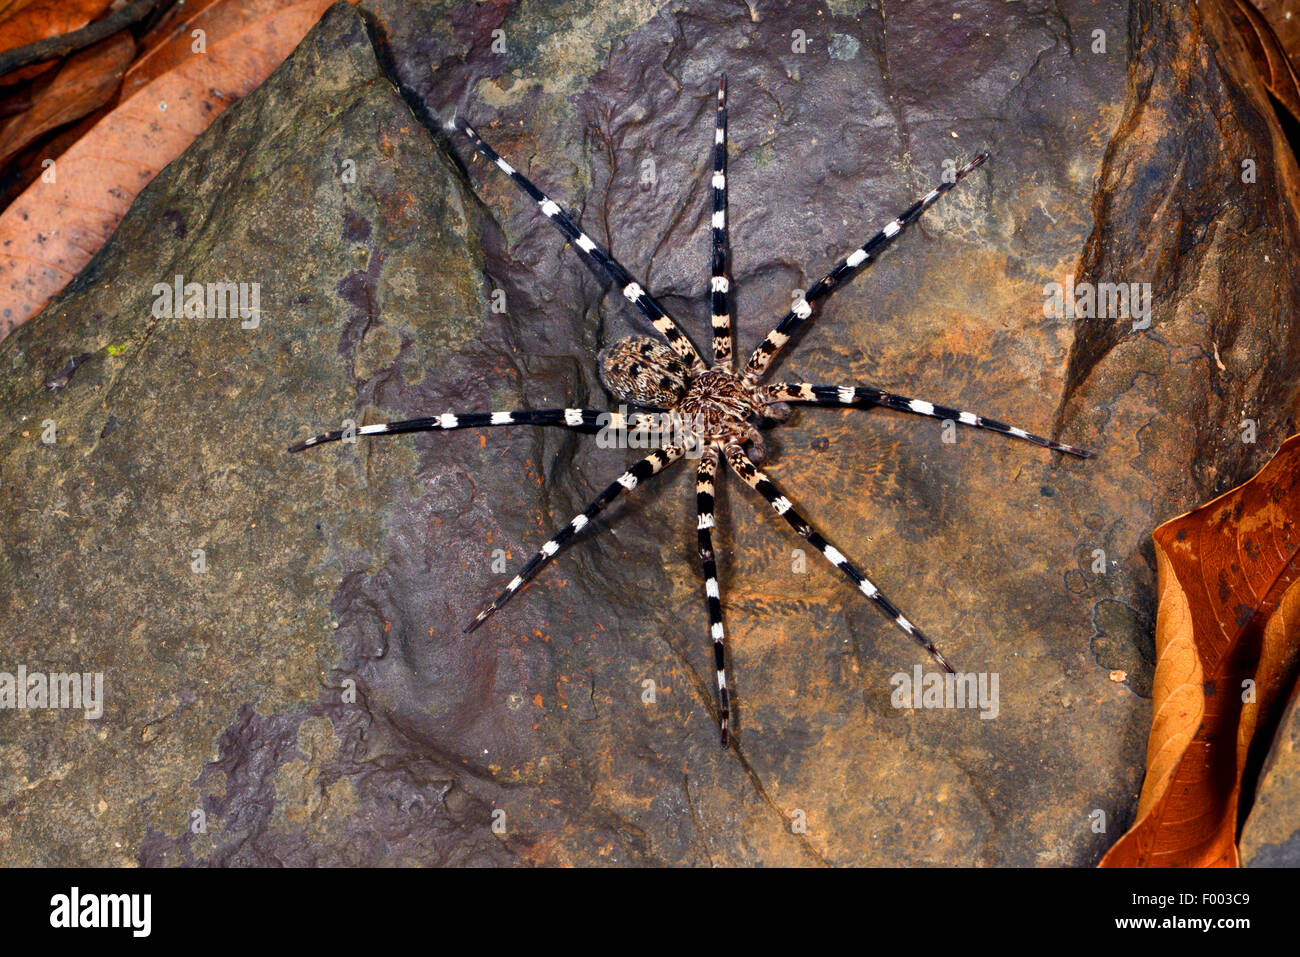 Ten New Spider Species Found in Madagascar